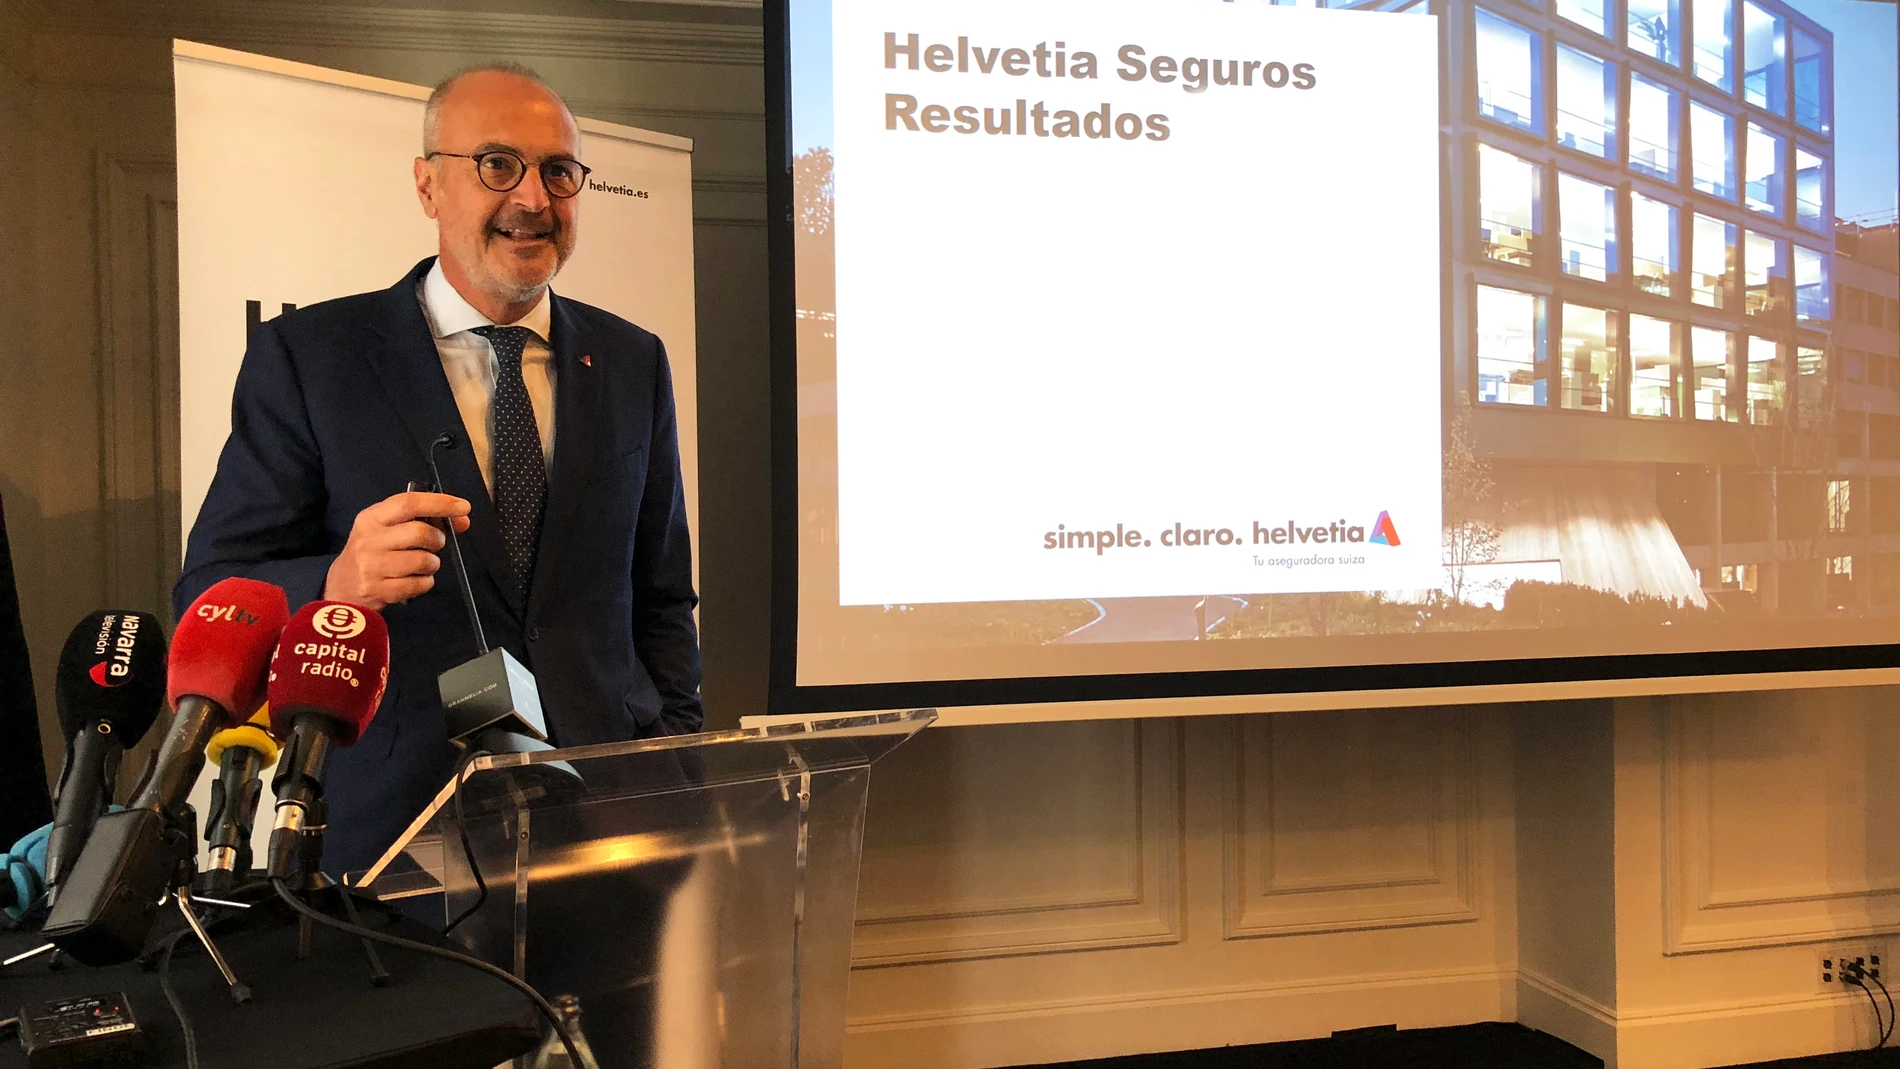 Íñigo Soto, director general de Helvetia Seguros